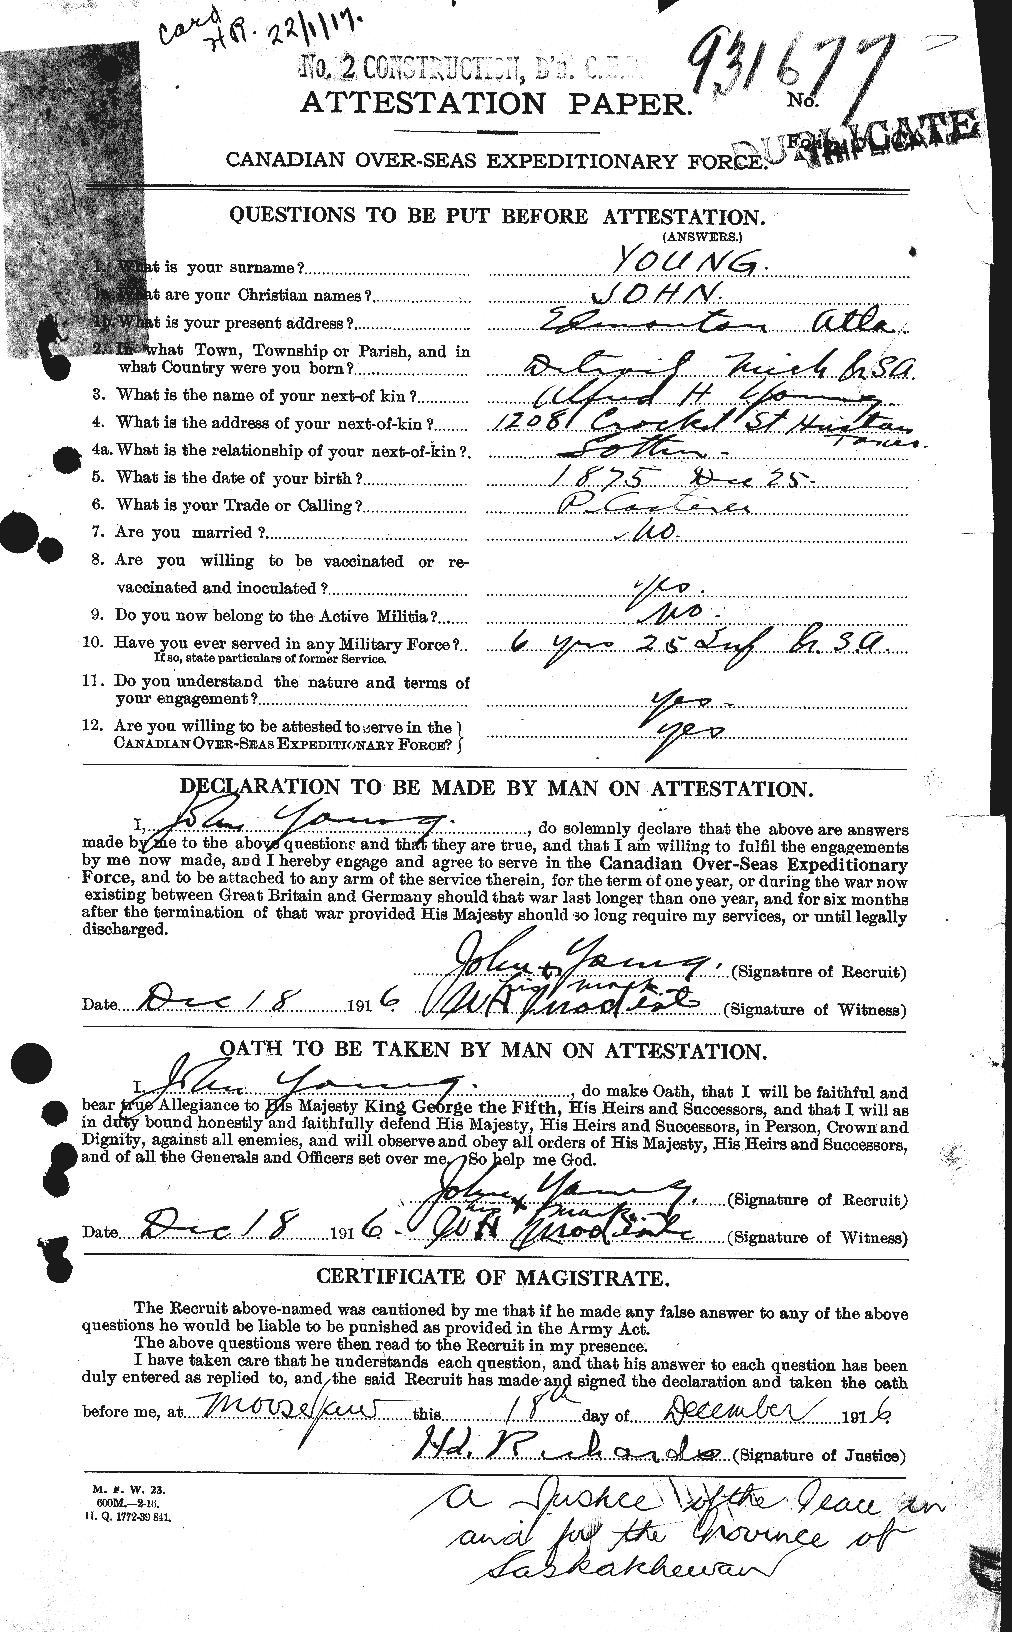 Dossiers du Personnel de la Première Guerre mondiale - CEC 690721a